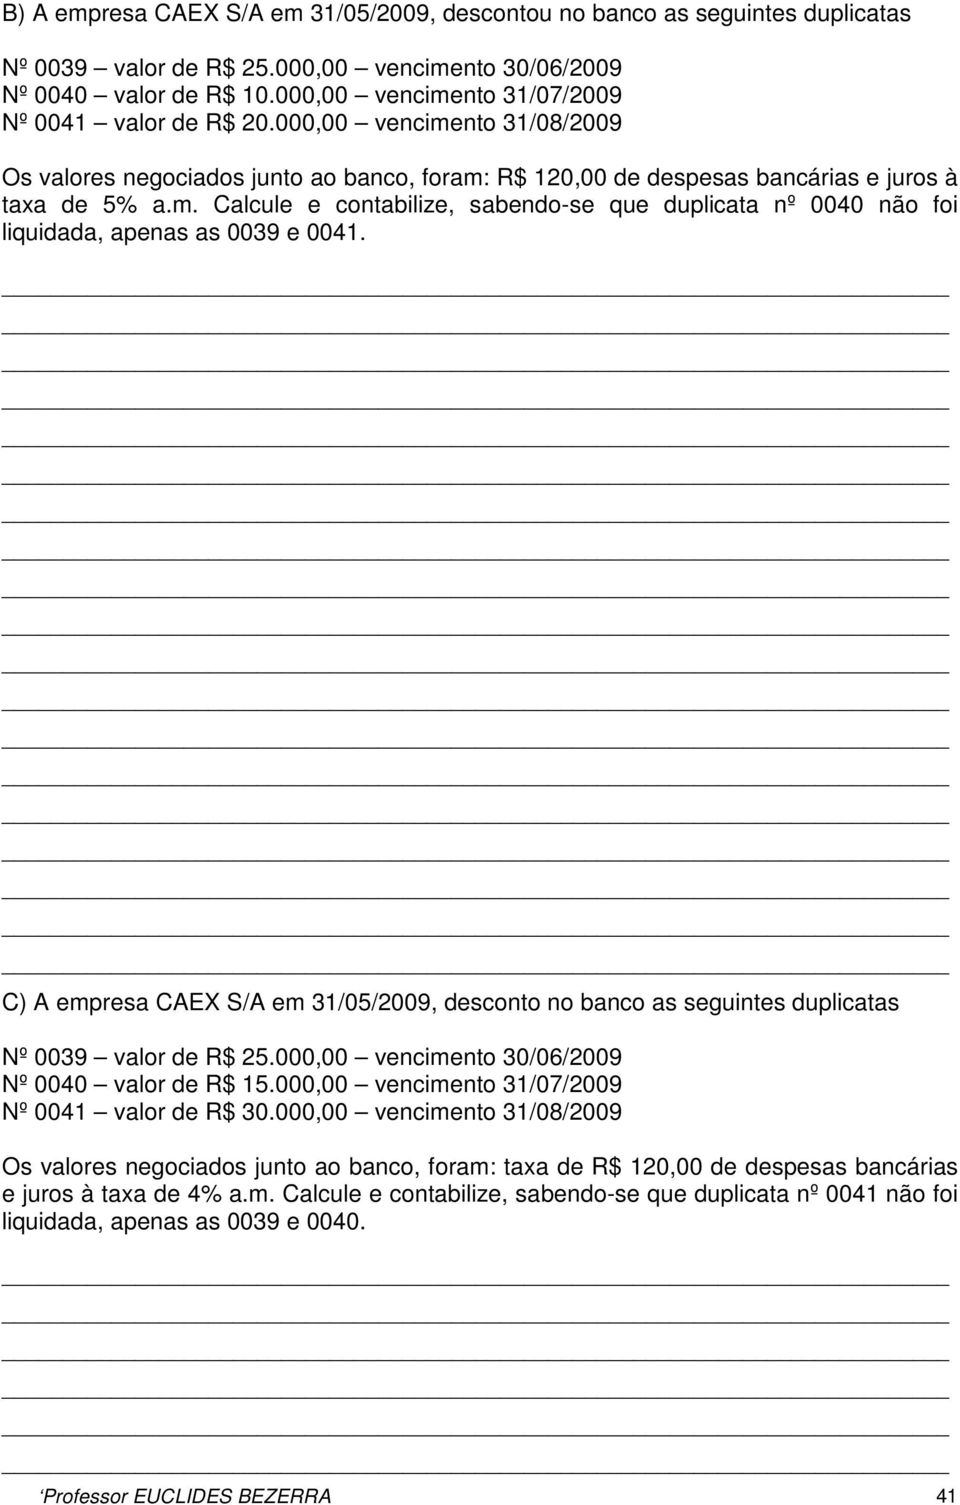 C) A empresa CAEX S/A em 31/05/2009, desconto no banco as seguintes duplicatas Nº 0039 valor de R$ 25.000,00 vencimento 30/06/2009 Nº 0040 valor de R$ 15.